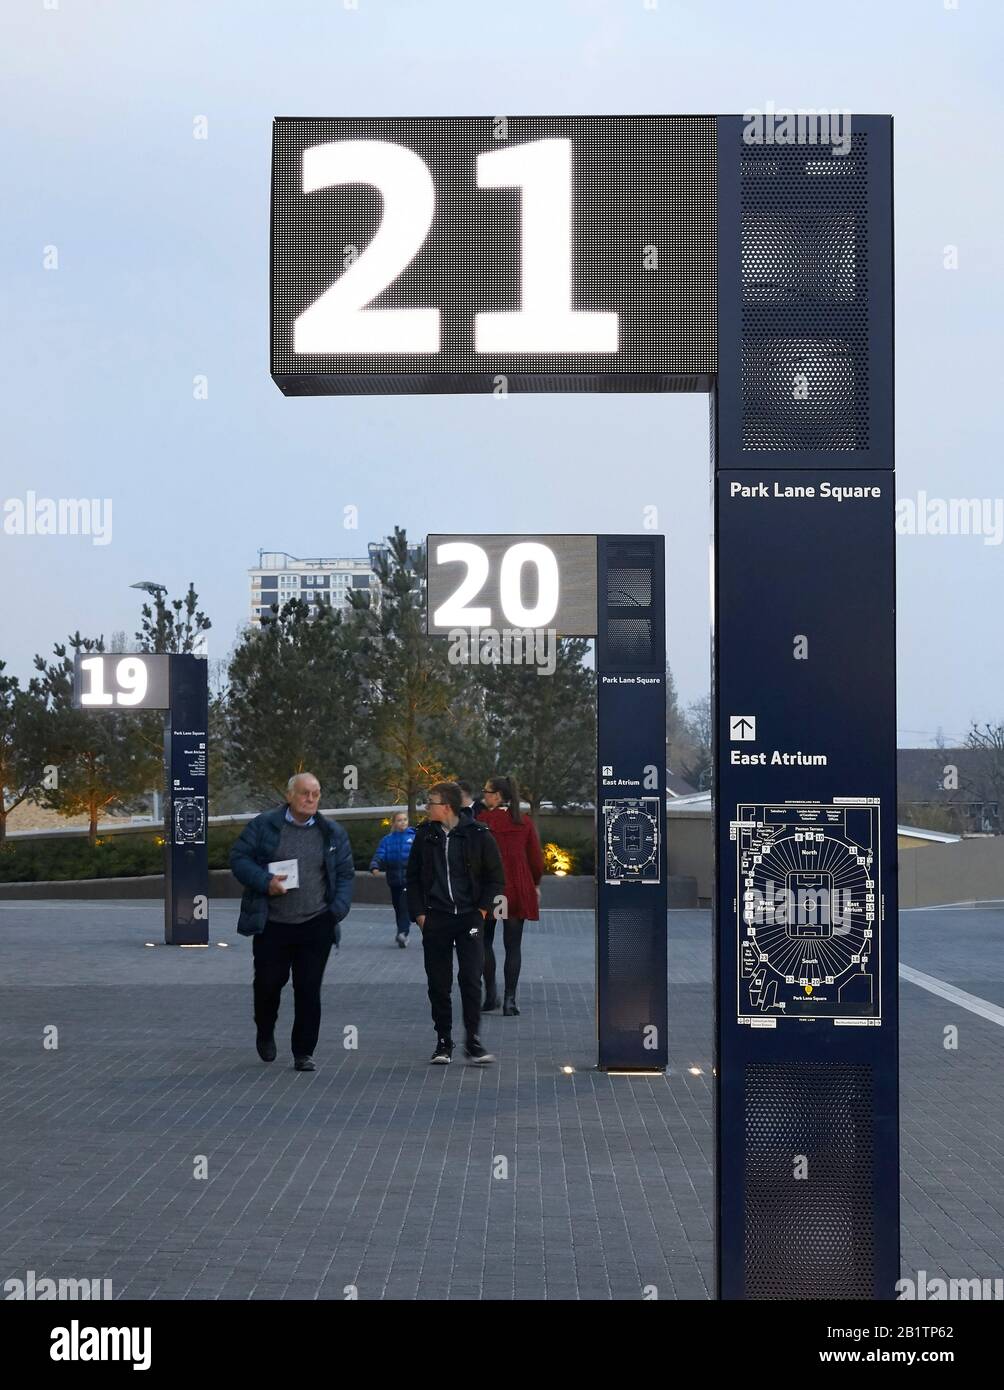 Système de guidage lumineux avec signalisation numérique. The New Tottenham Hotspur Stadium, Londres, Royaume-Uni. Architecte: Populeux, 2019. Banque D'Images